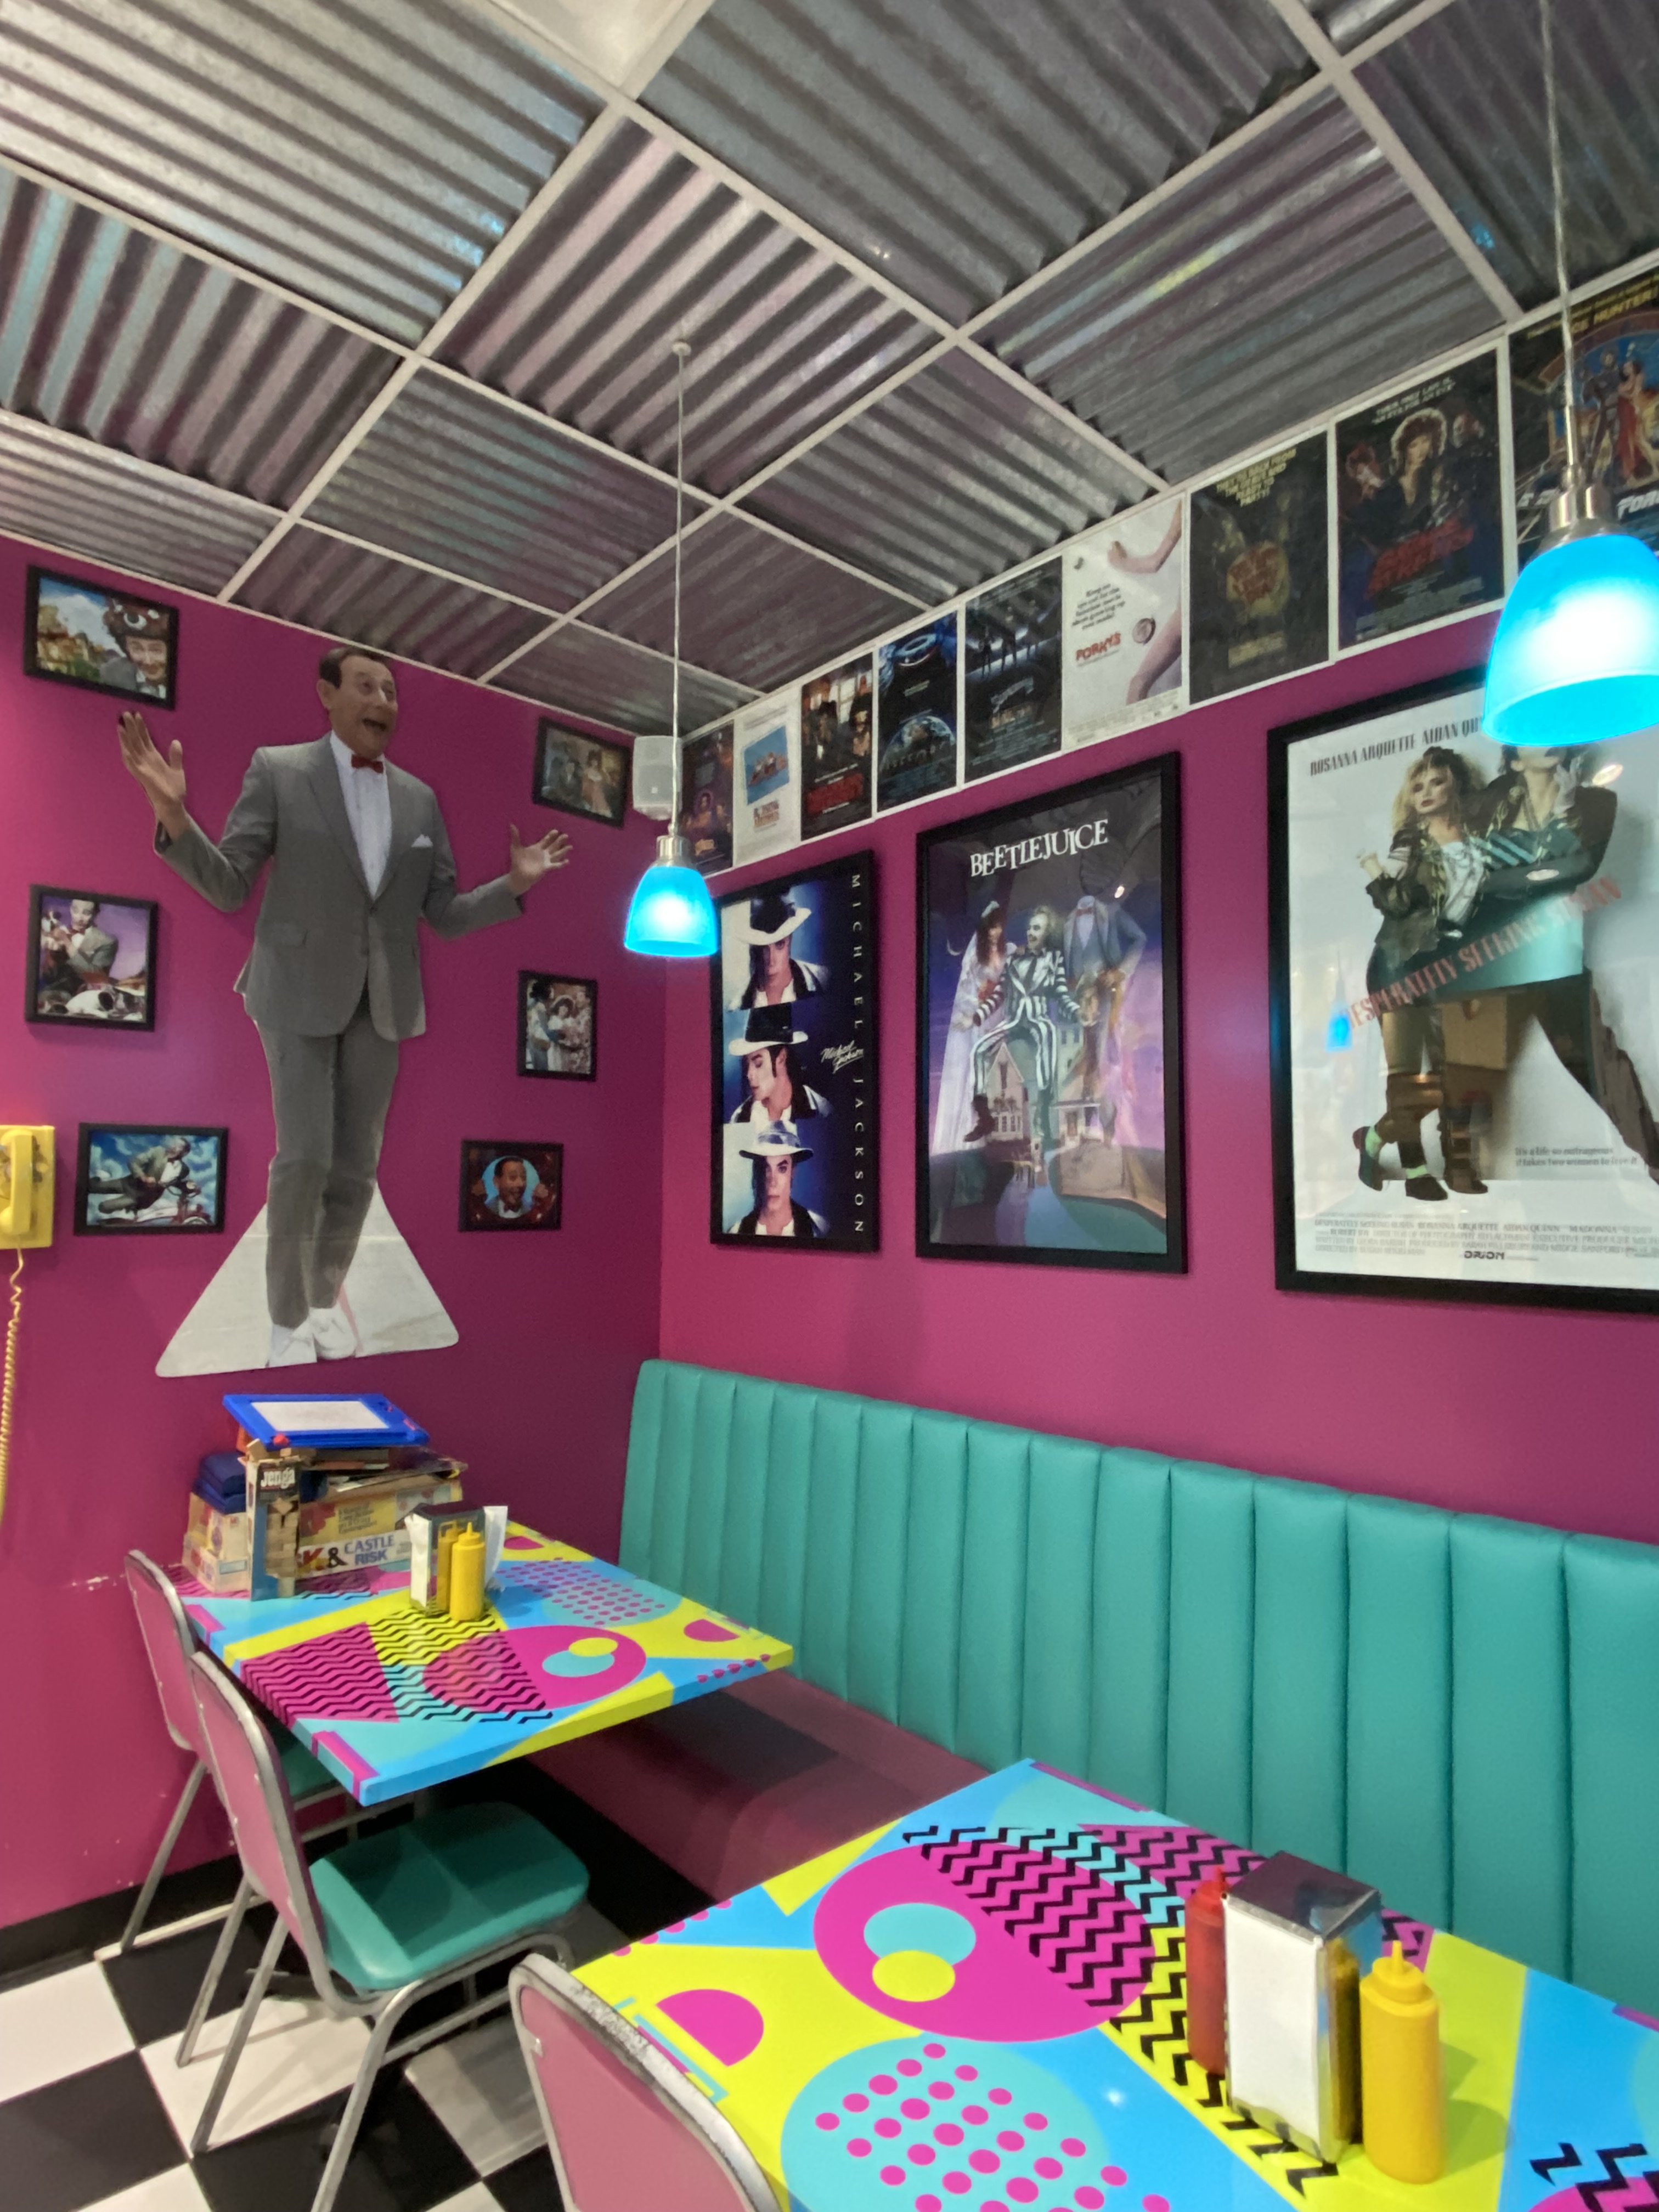 80年代的咖啡馆用餐区有80年代的纪念品- Pee Wee Herman, Beetlejuice, Michael Jackson和其他复古装饰